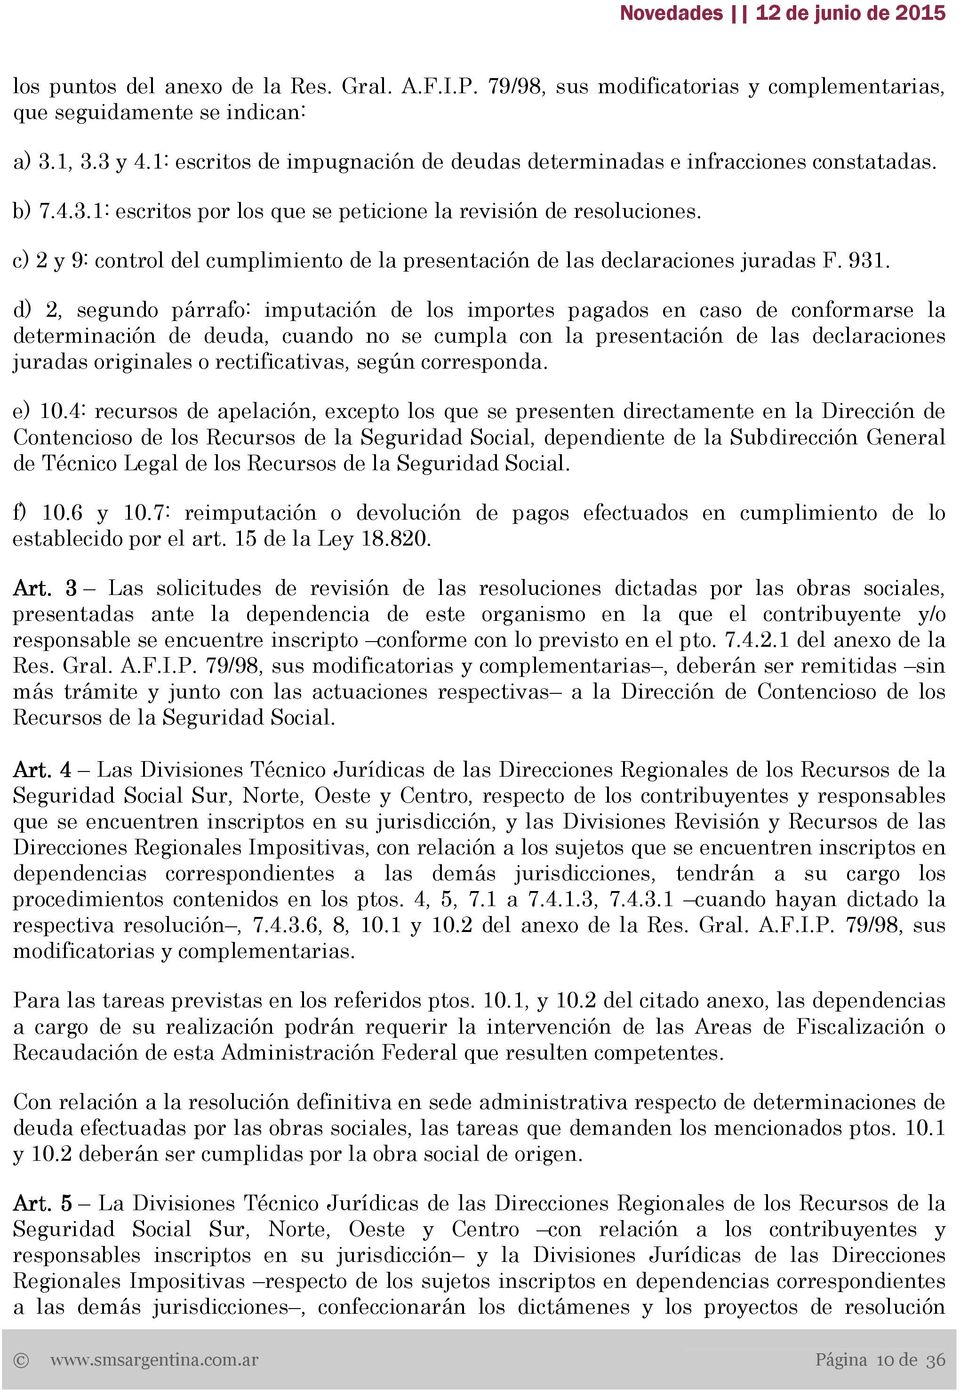 c) 2 y 9: control del cumplimiento de la presentación de las declaraciones juradas F. 931.